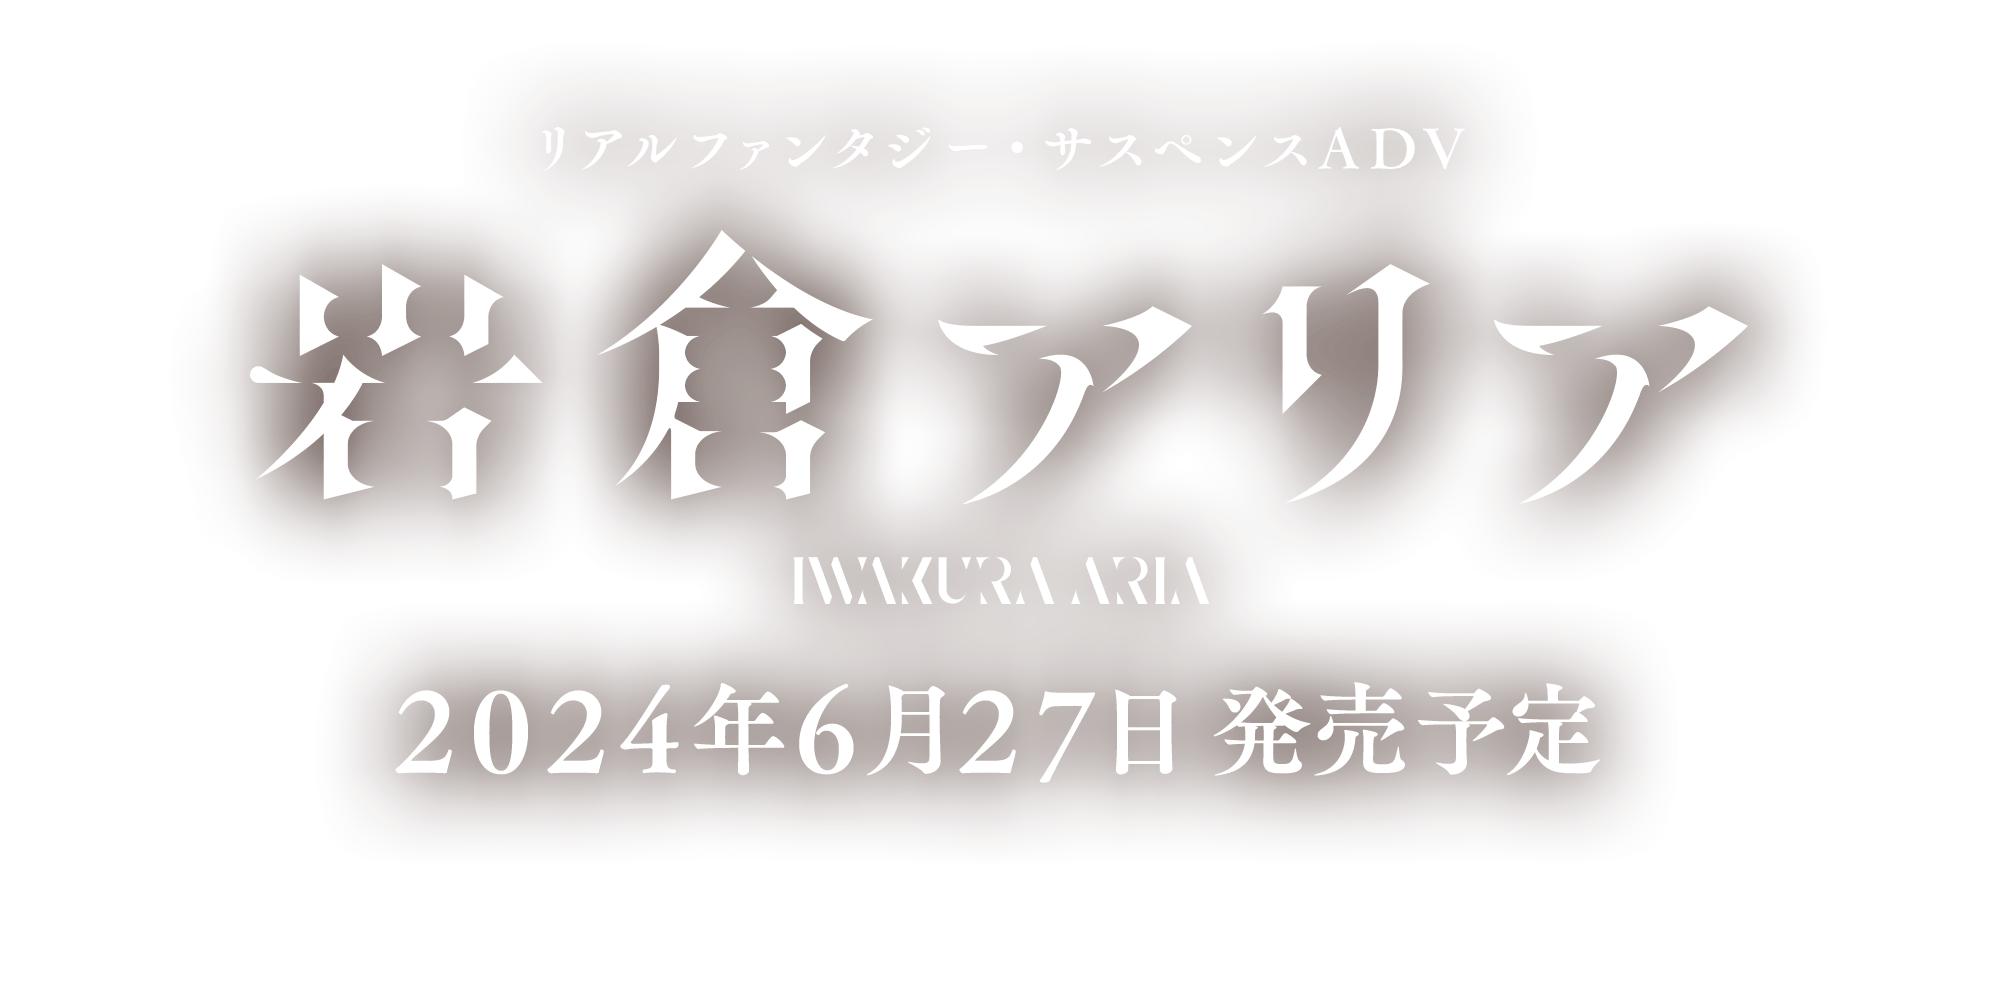 リアルファンタジー・サスペンスADV「岩倉アリア」2024年6月27日発売予定